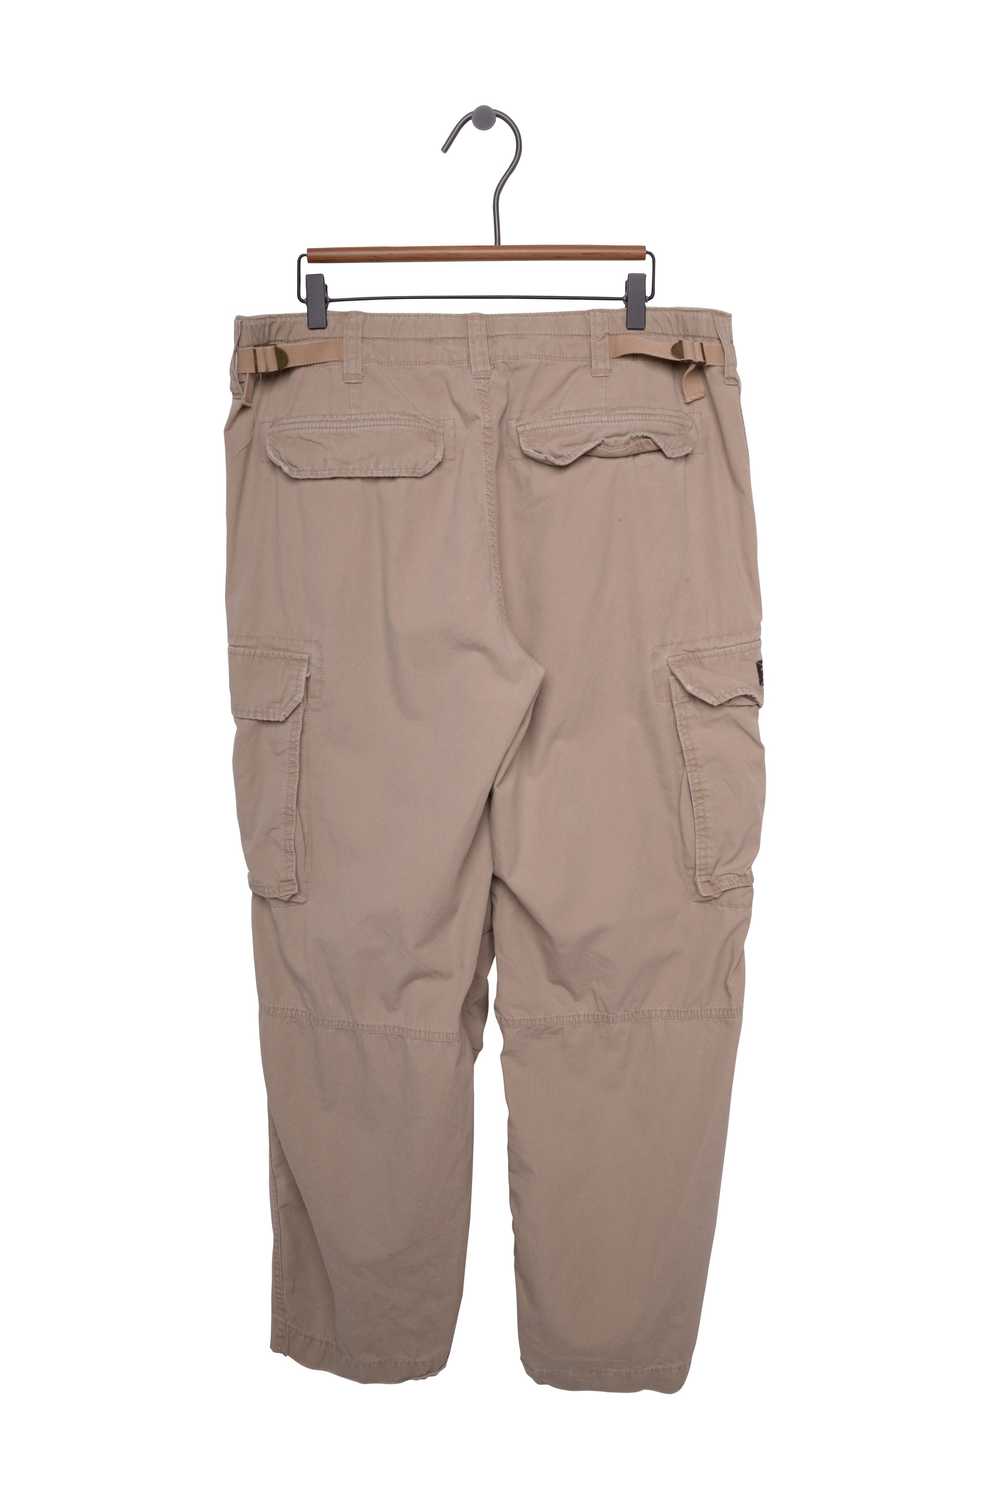 Ralph Lauren Cargo Pants - image 2